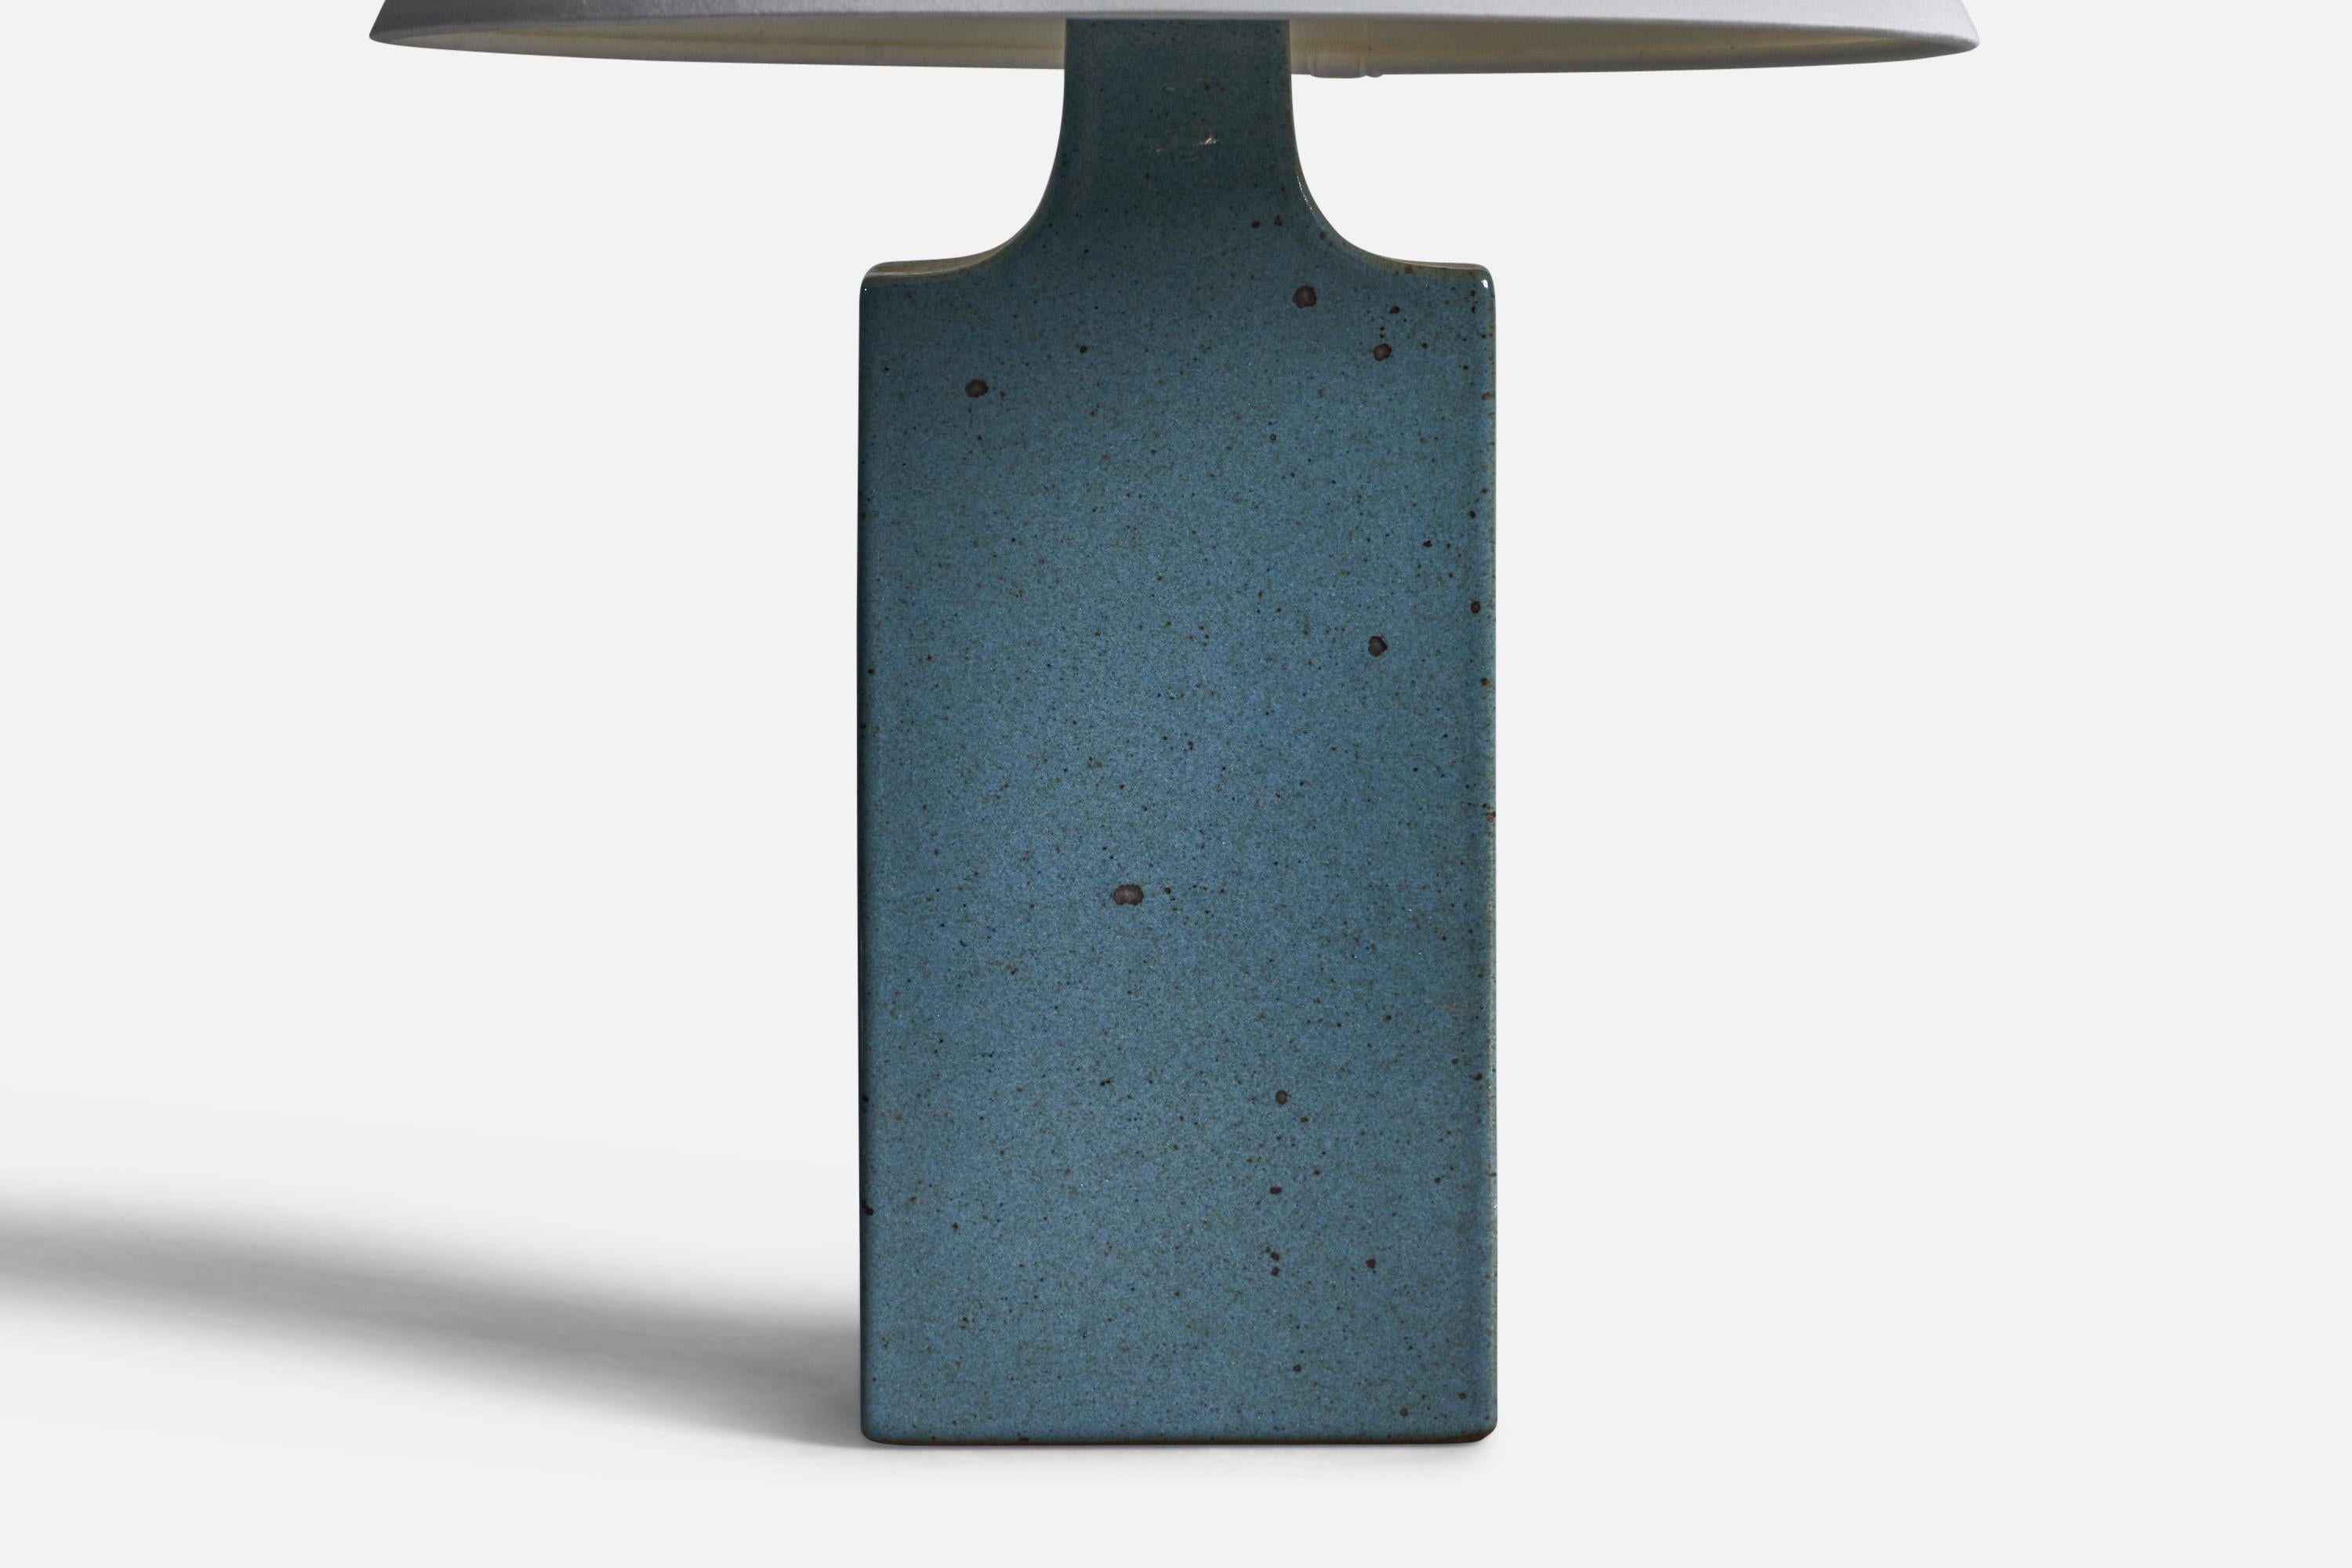 Tischlampe aus blau glasiertem Steingut, entworfen von Per & Annelise Linneman-Schmidt, hergestellt von Palshus, Dänemark, 1960er Jahre.

Abmessungen der Lampe (Zoll): 11,75